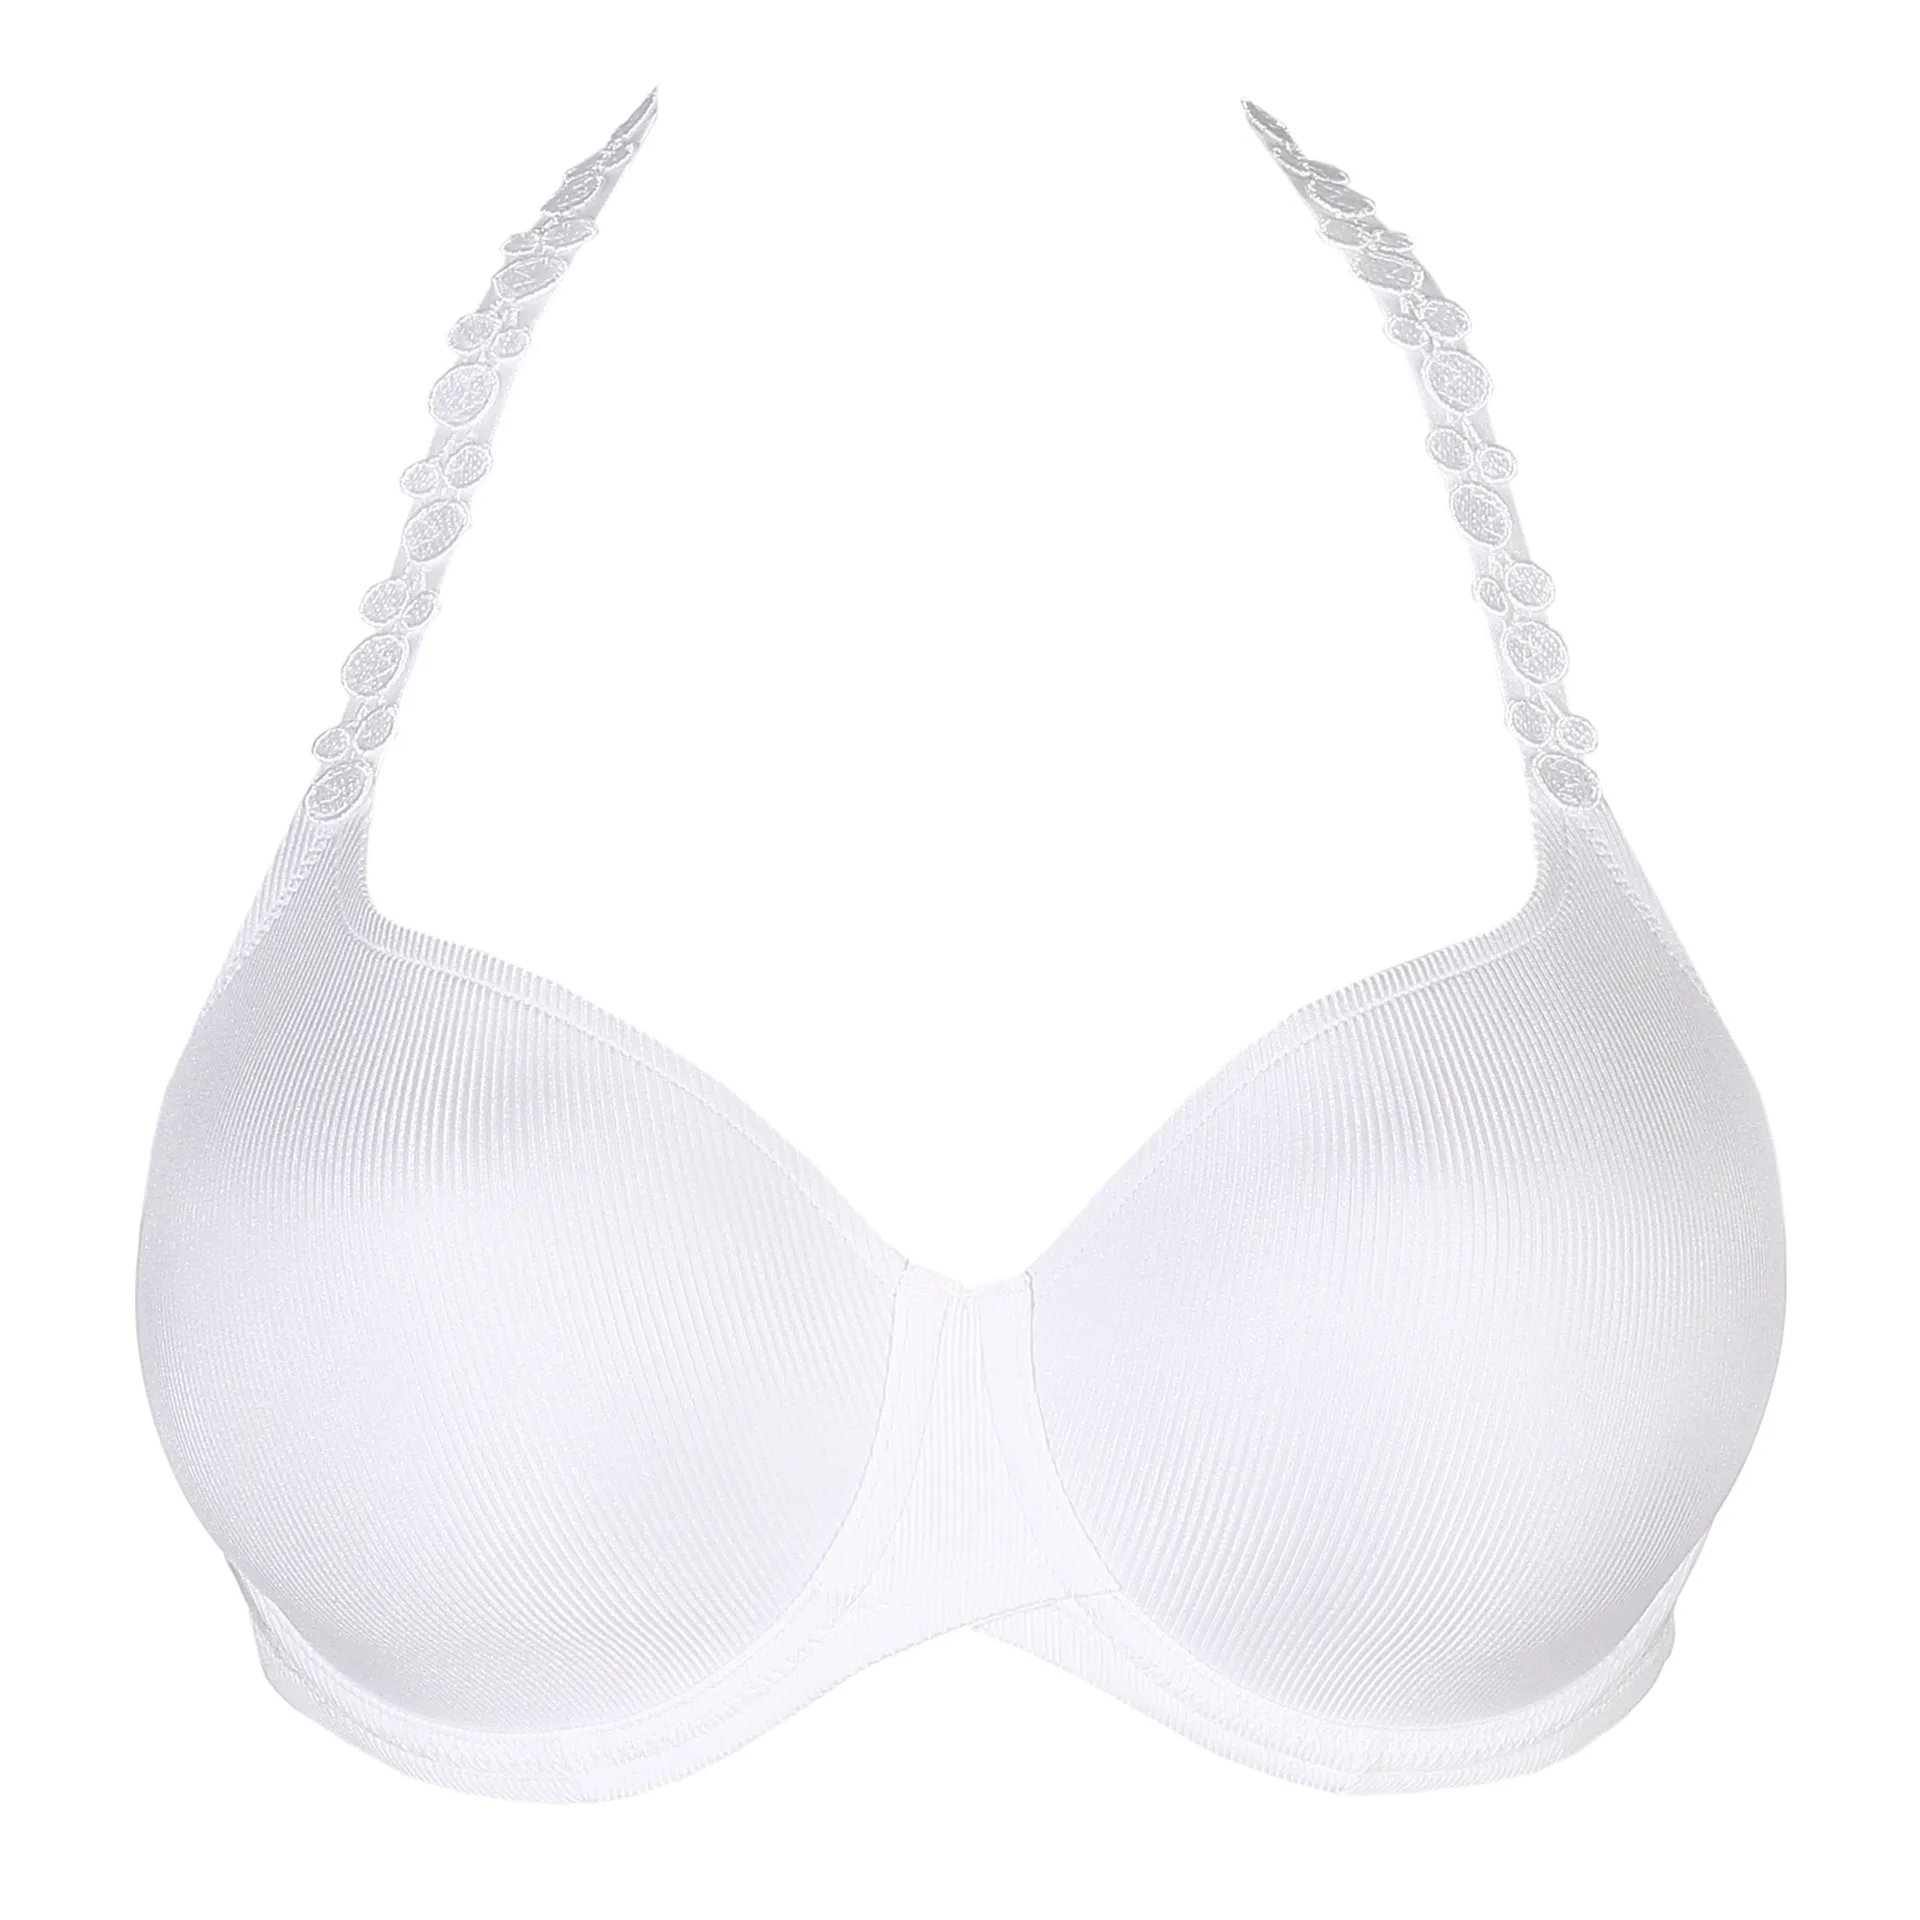 PrimaDonna Twist STAR white padded bra - strapless